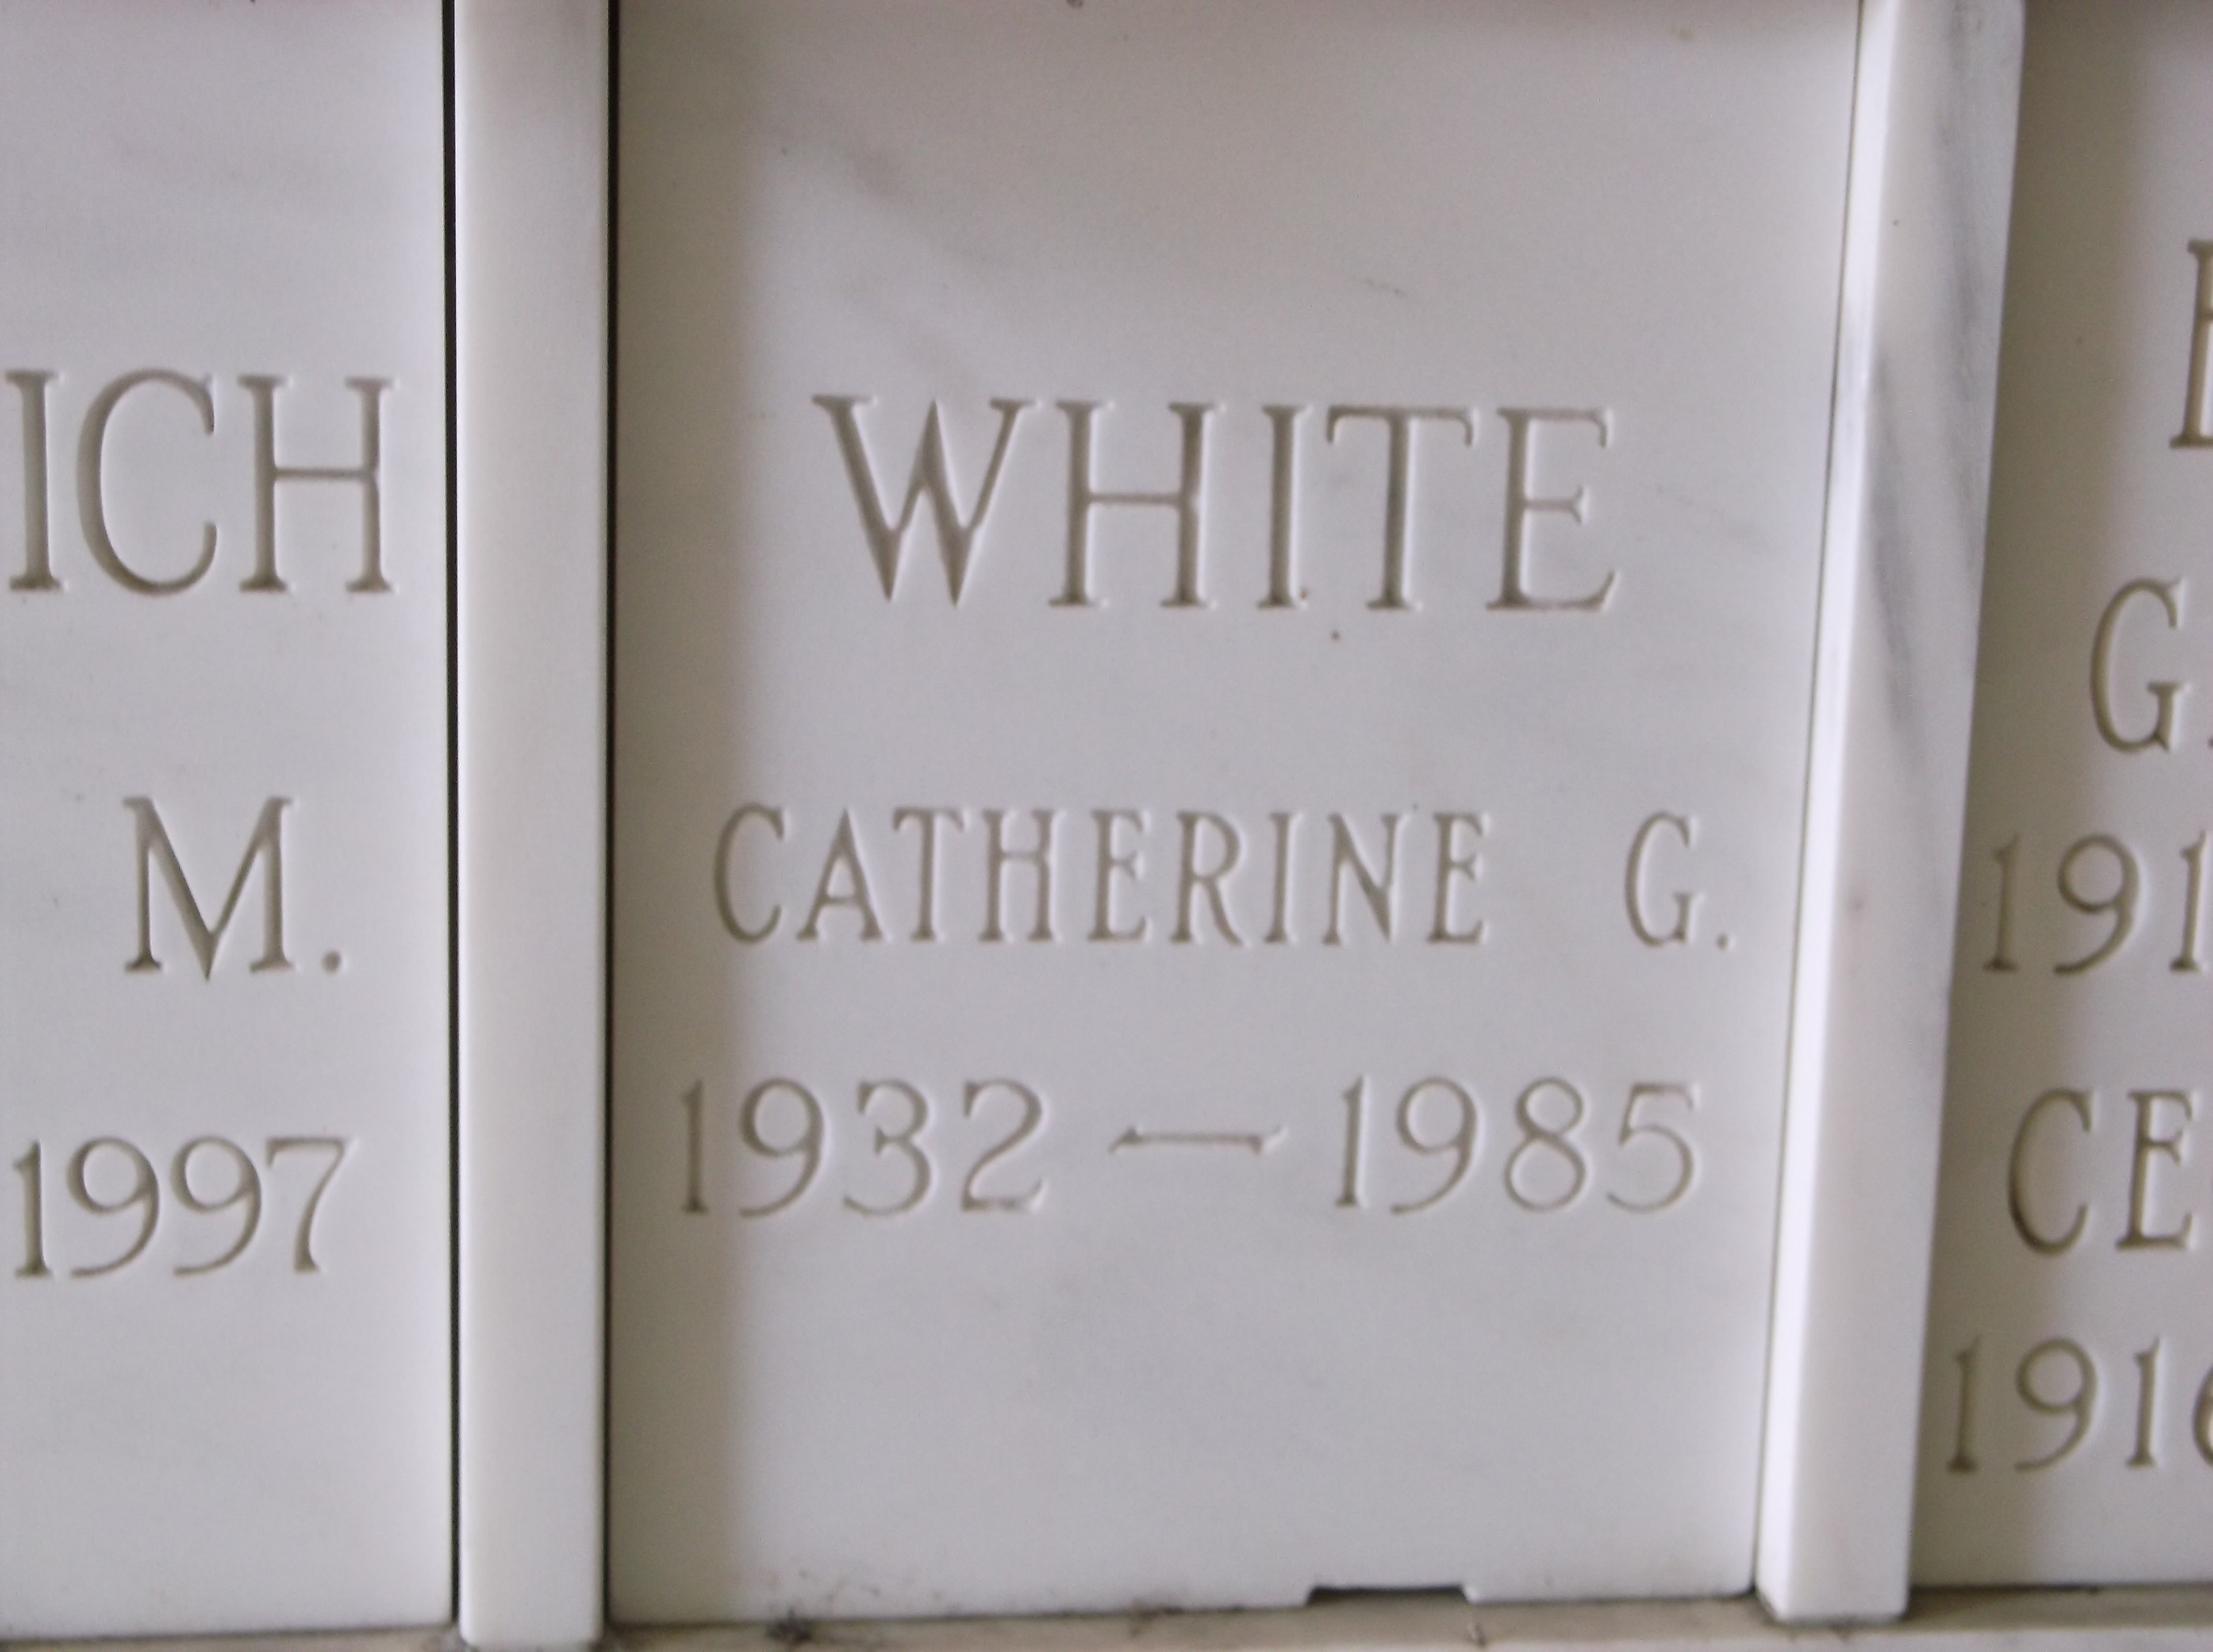 Catherine G White